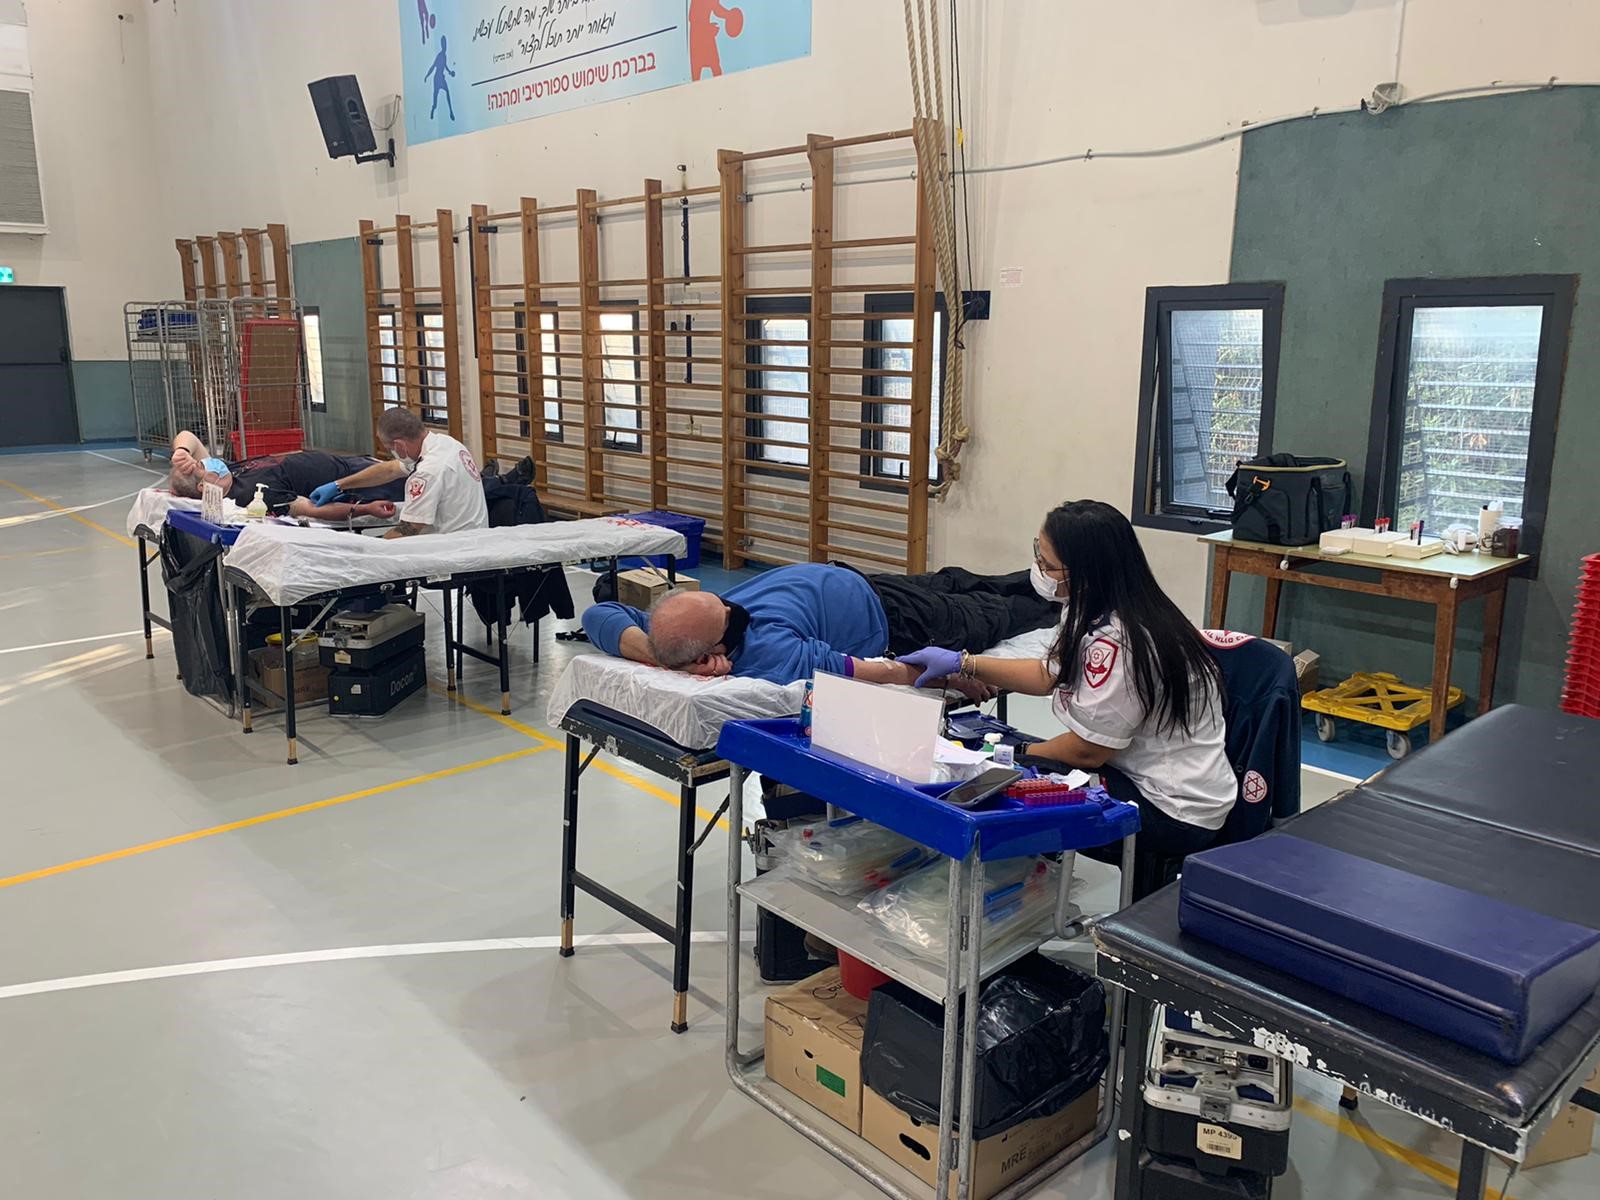 מד"א בשיתוף עיריית גבעתיים קיימו מבצע משותף להתרמת דם בשל מצוקת מנות דם בבנק הדם